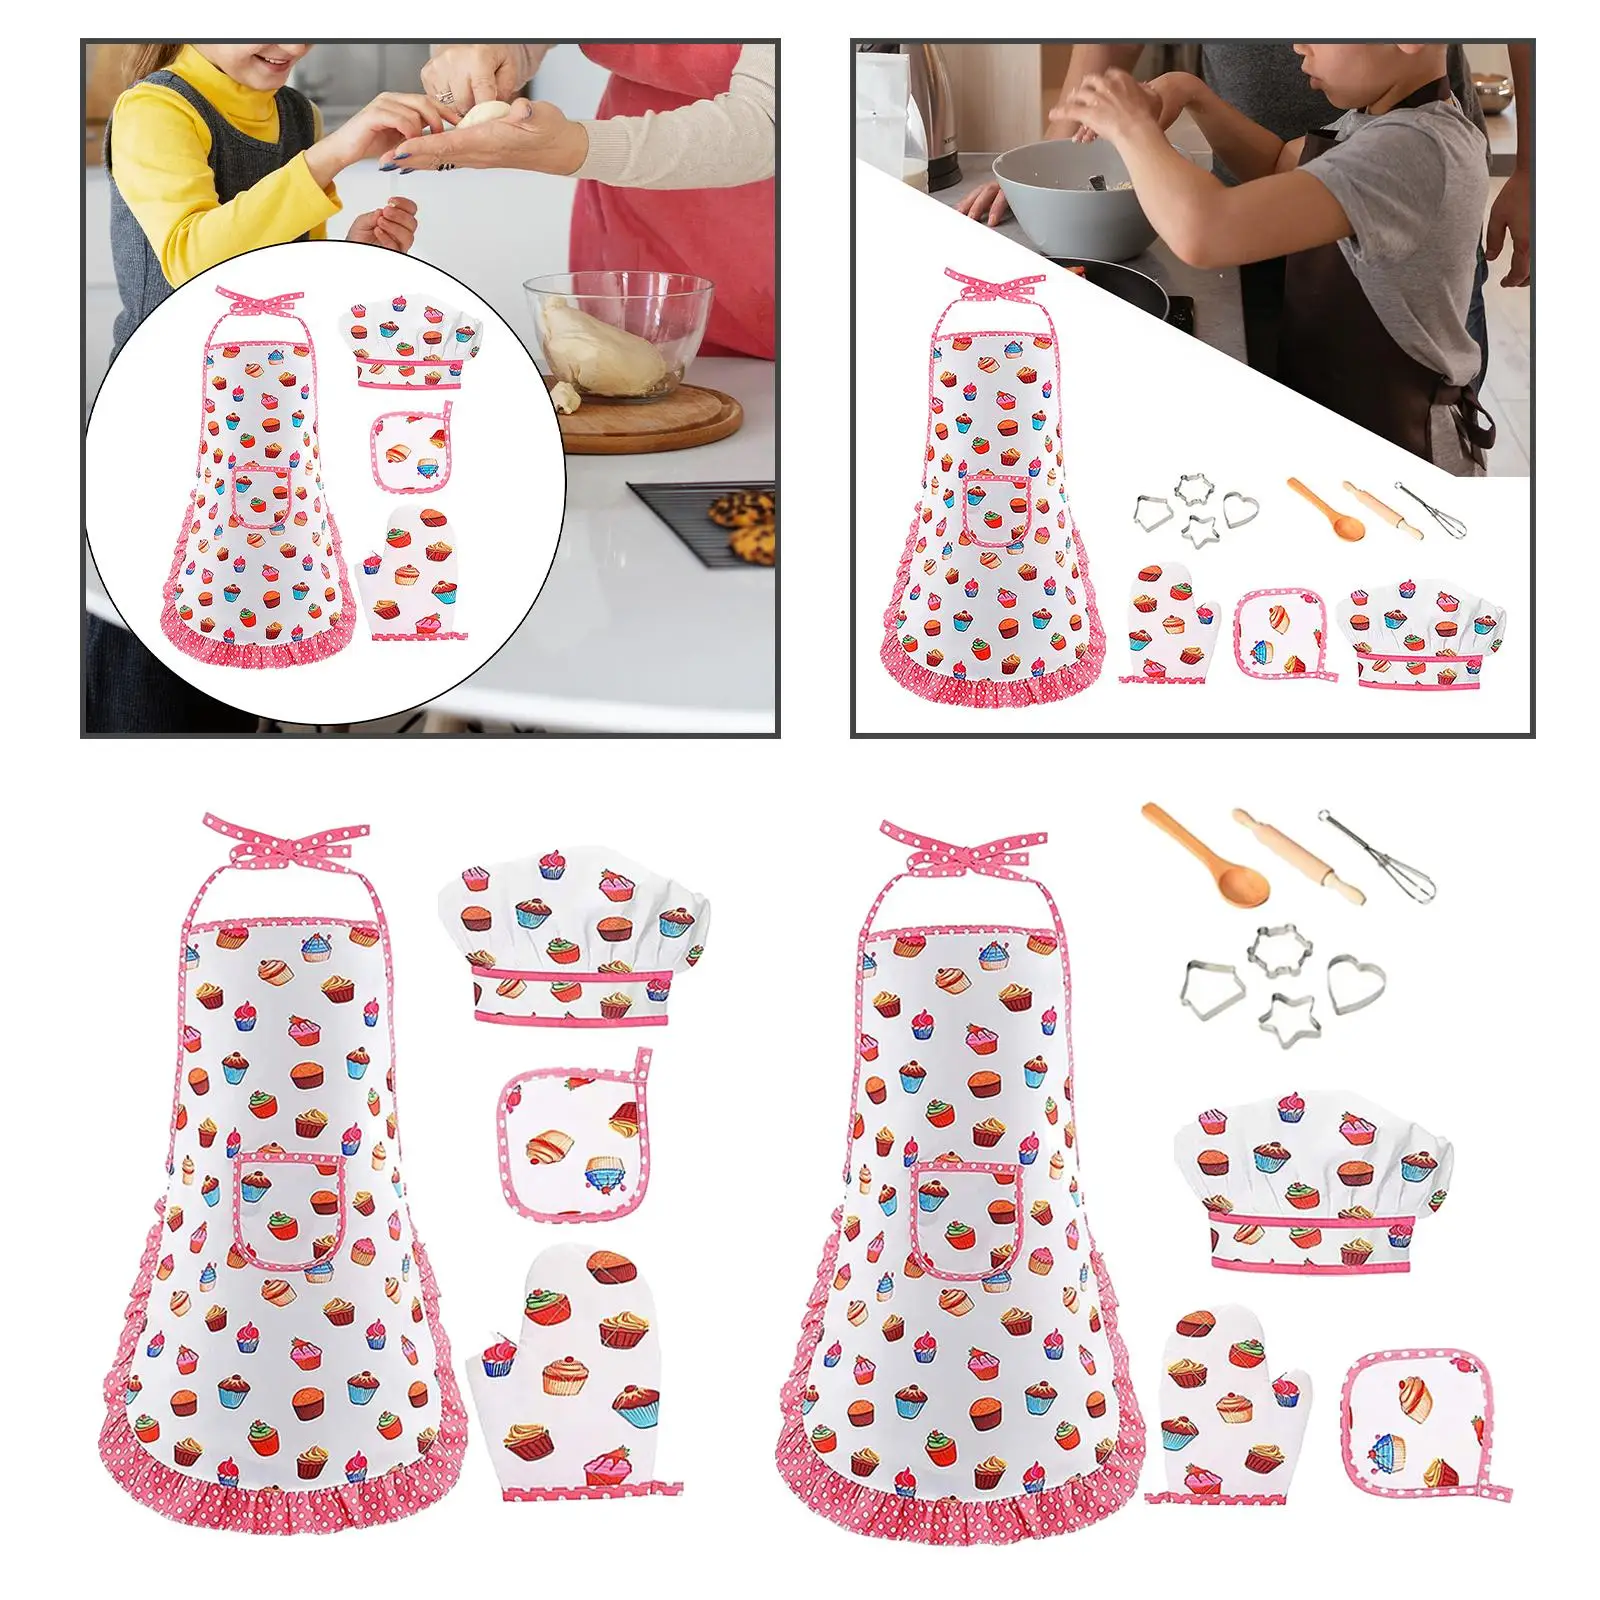 Chef Clothing Set Developmental Toy Kitchen Playset for Girls Birthday Gift